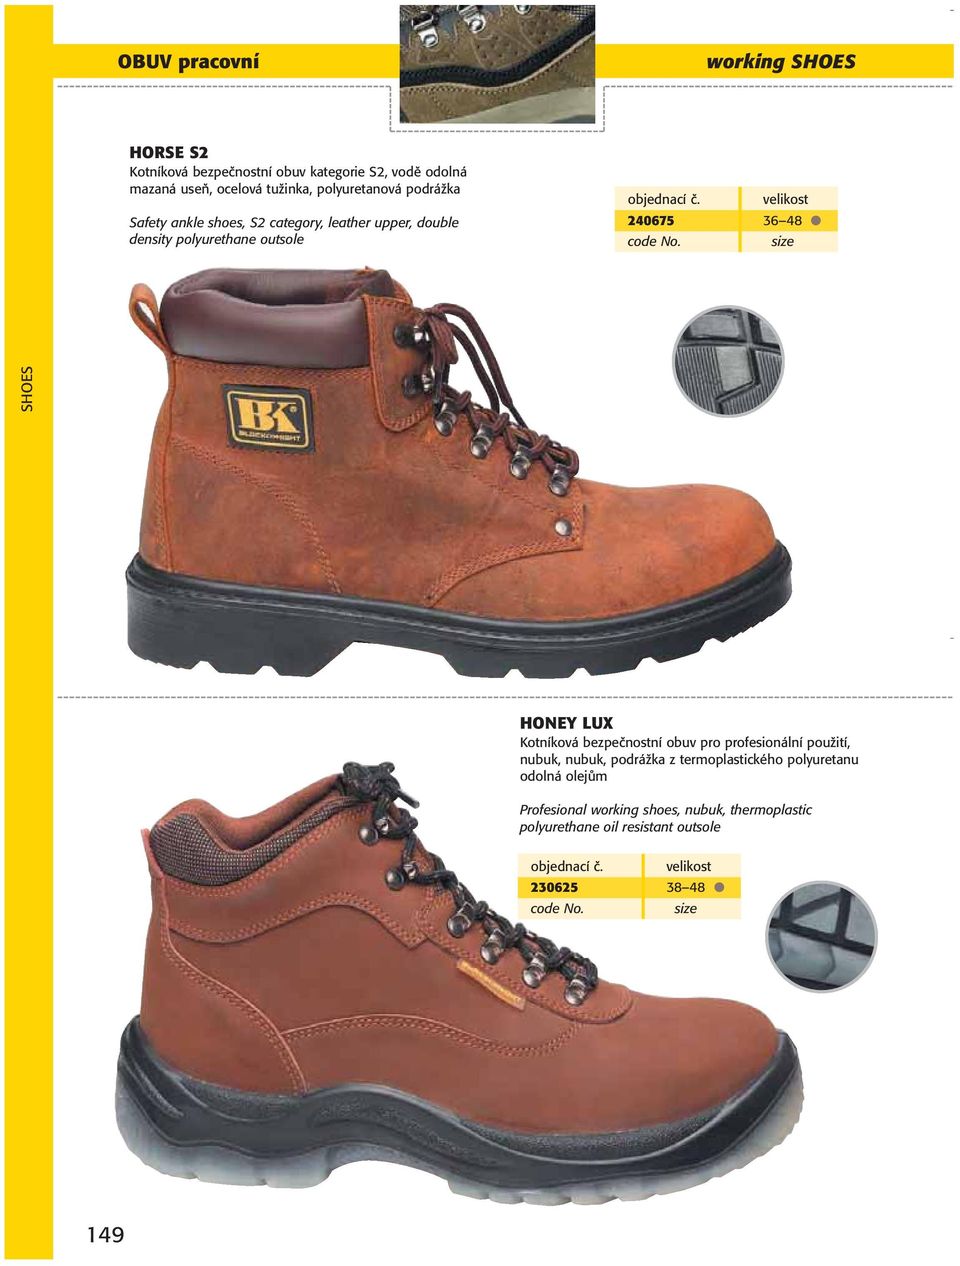 48 HONEY LUX Kotníková bezpečnostní obuv pro profesionální použití, nubuk, nubuk, podrážka z termoplastického